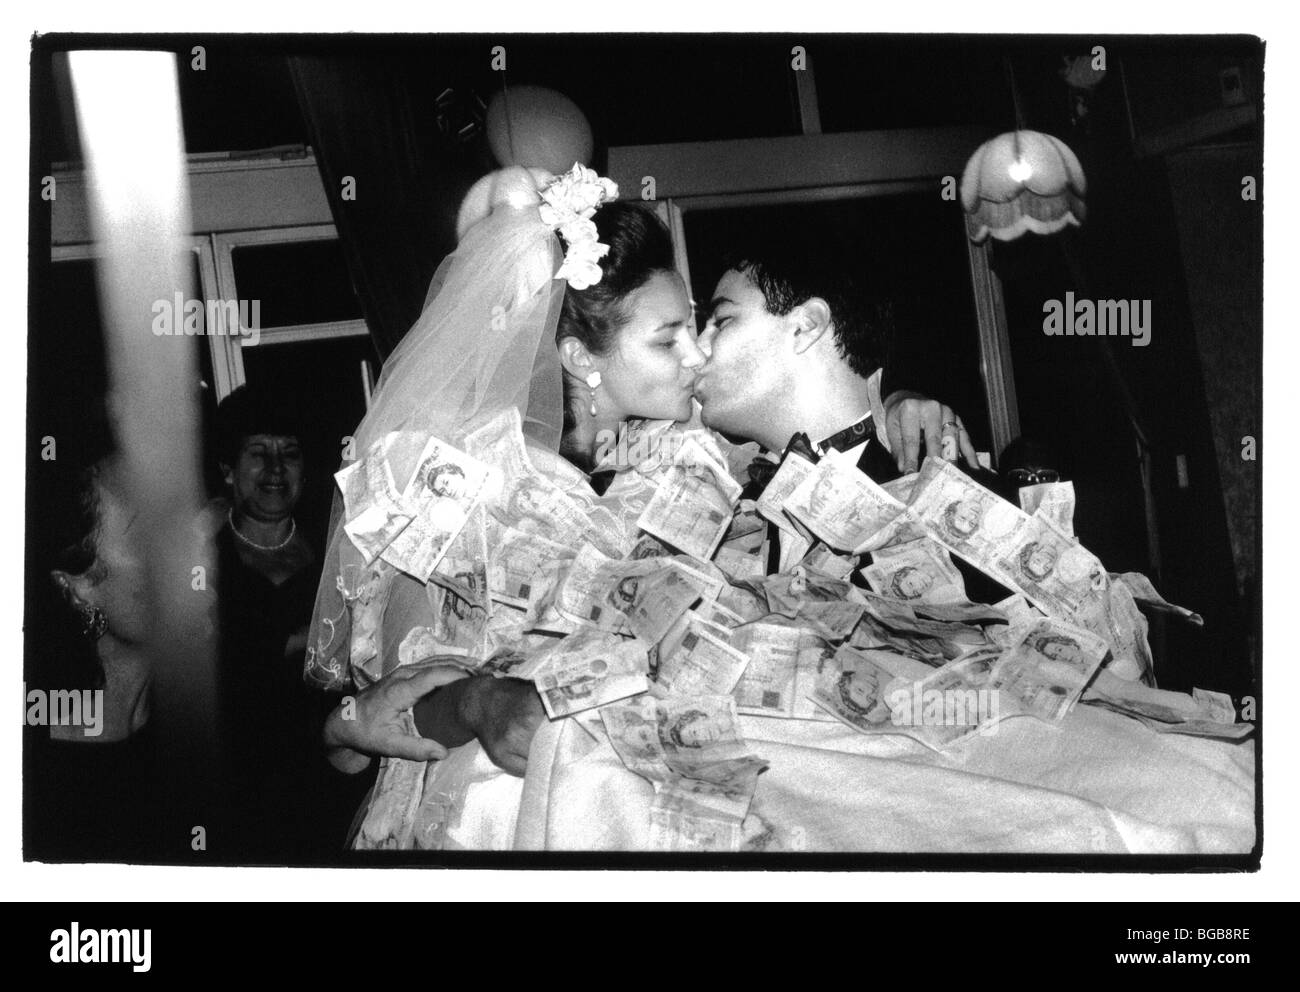 Religione matrimoni cristiani greco tradizionale cerimonia di nozze. Sposa e lo Sposo coperti in denaro che è stato segnato per loro. Foto Stock